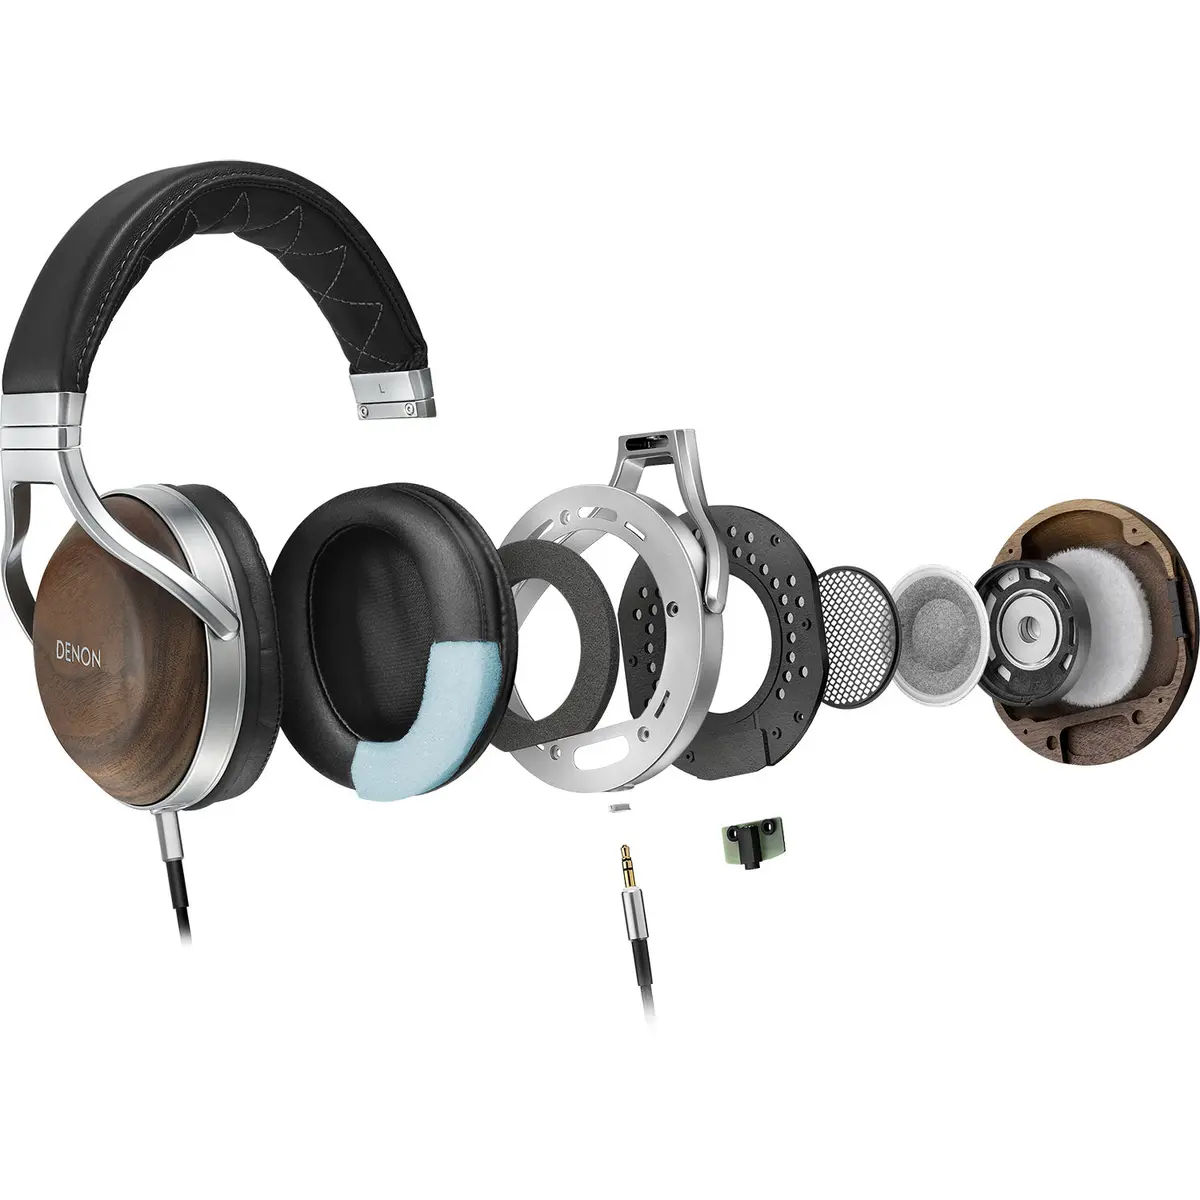 4. Denon AH-D7200 Over-Ear Headphones